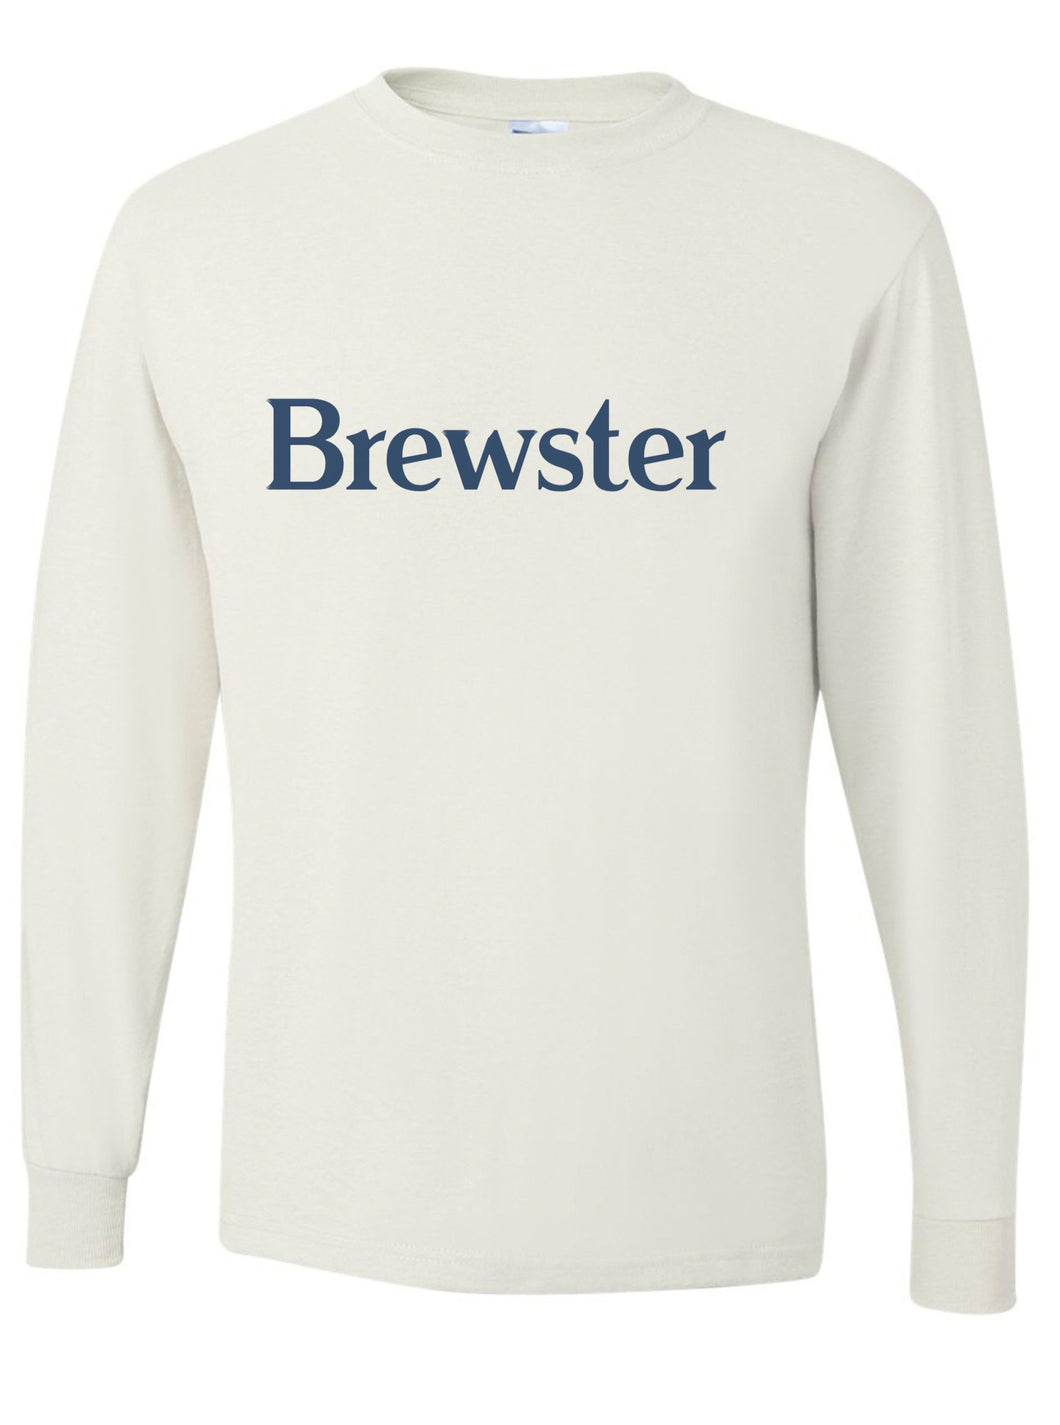 Brewster Jerzees Long Sleeve Shirt